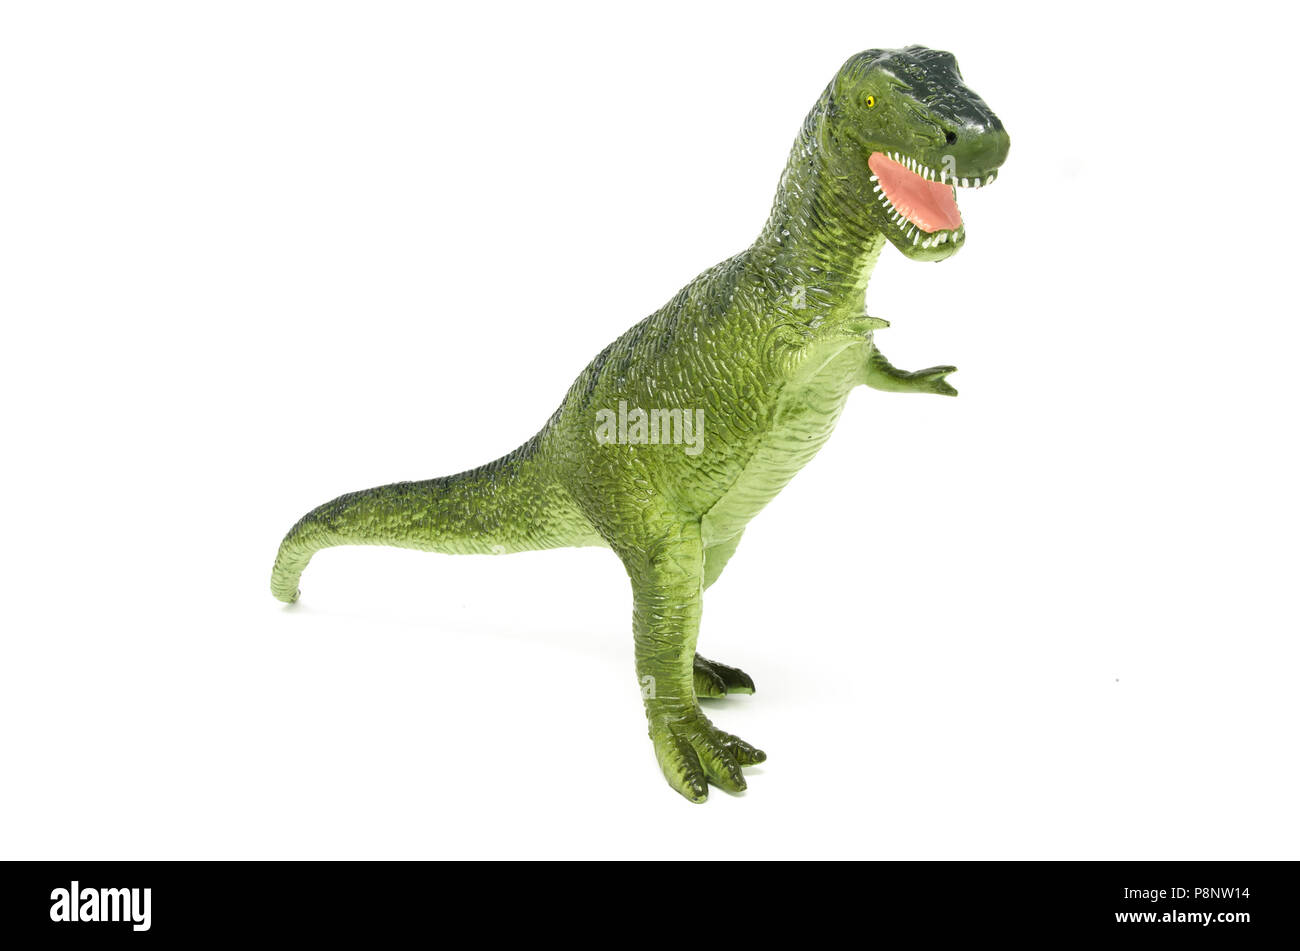 L'avant du vert en plastique jouet dinosaure Tyrannosaurus rex, isolé sur un fond blanc. Banque D'Images